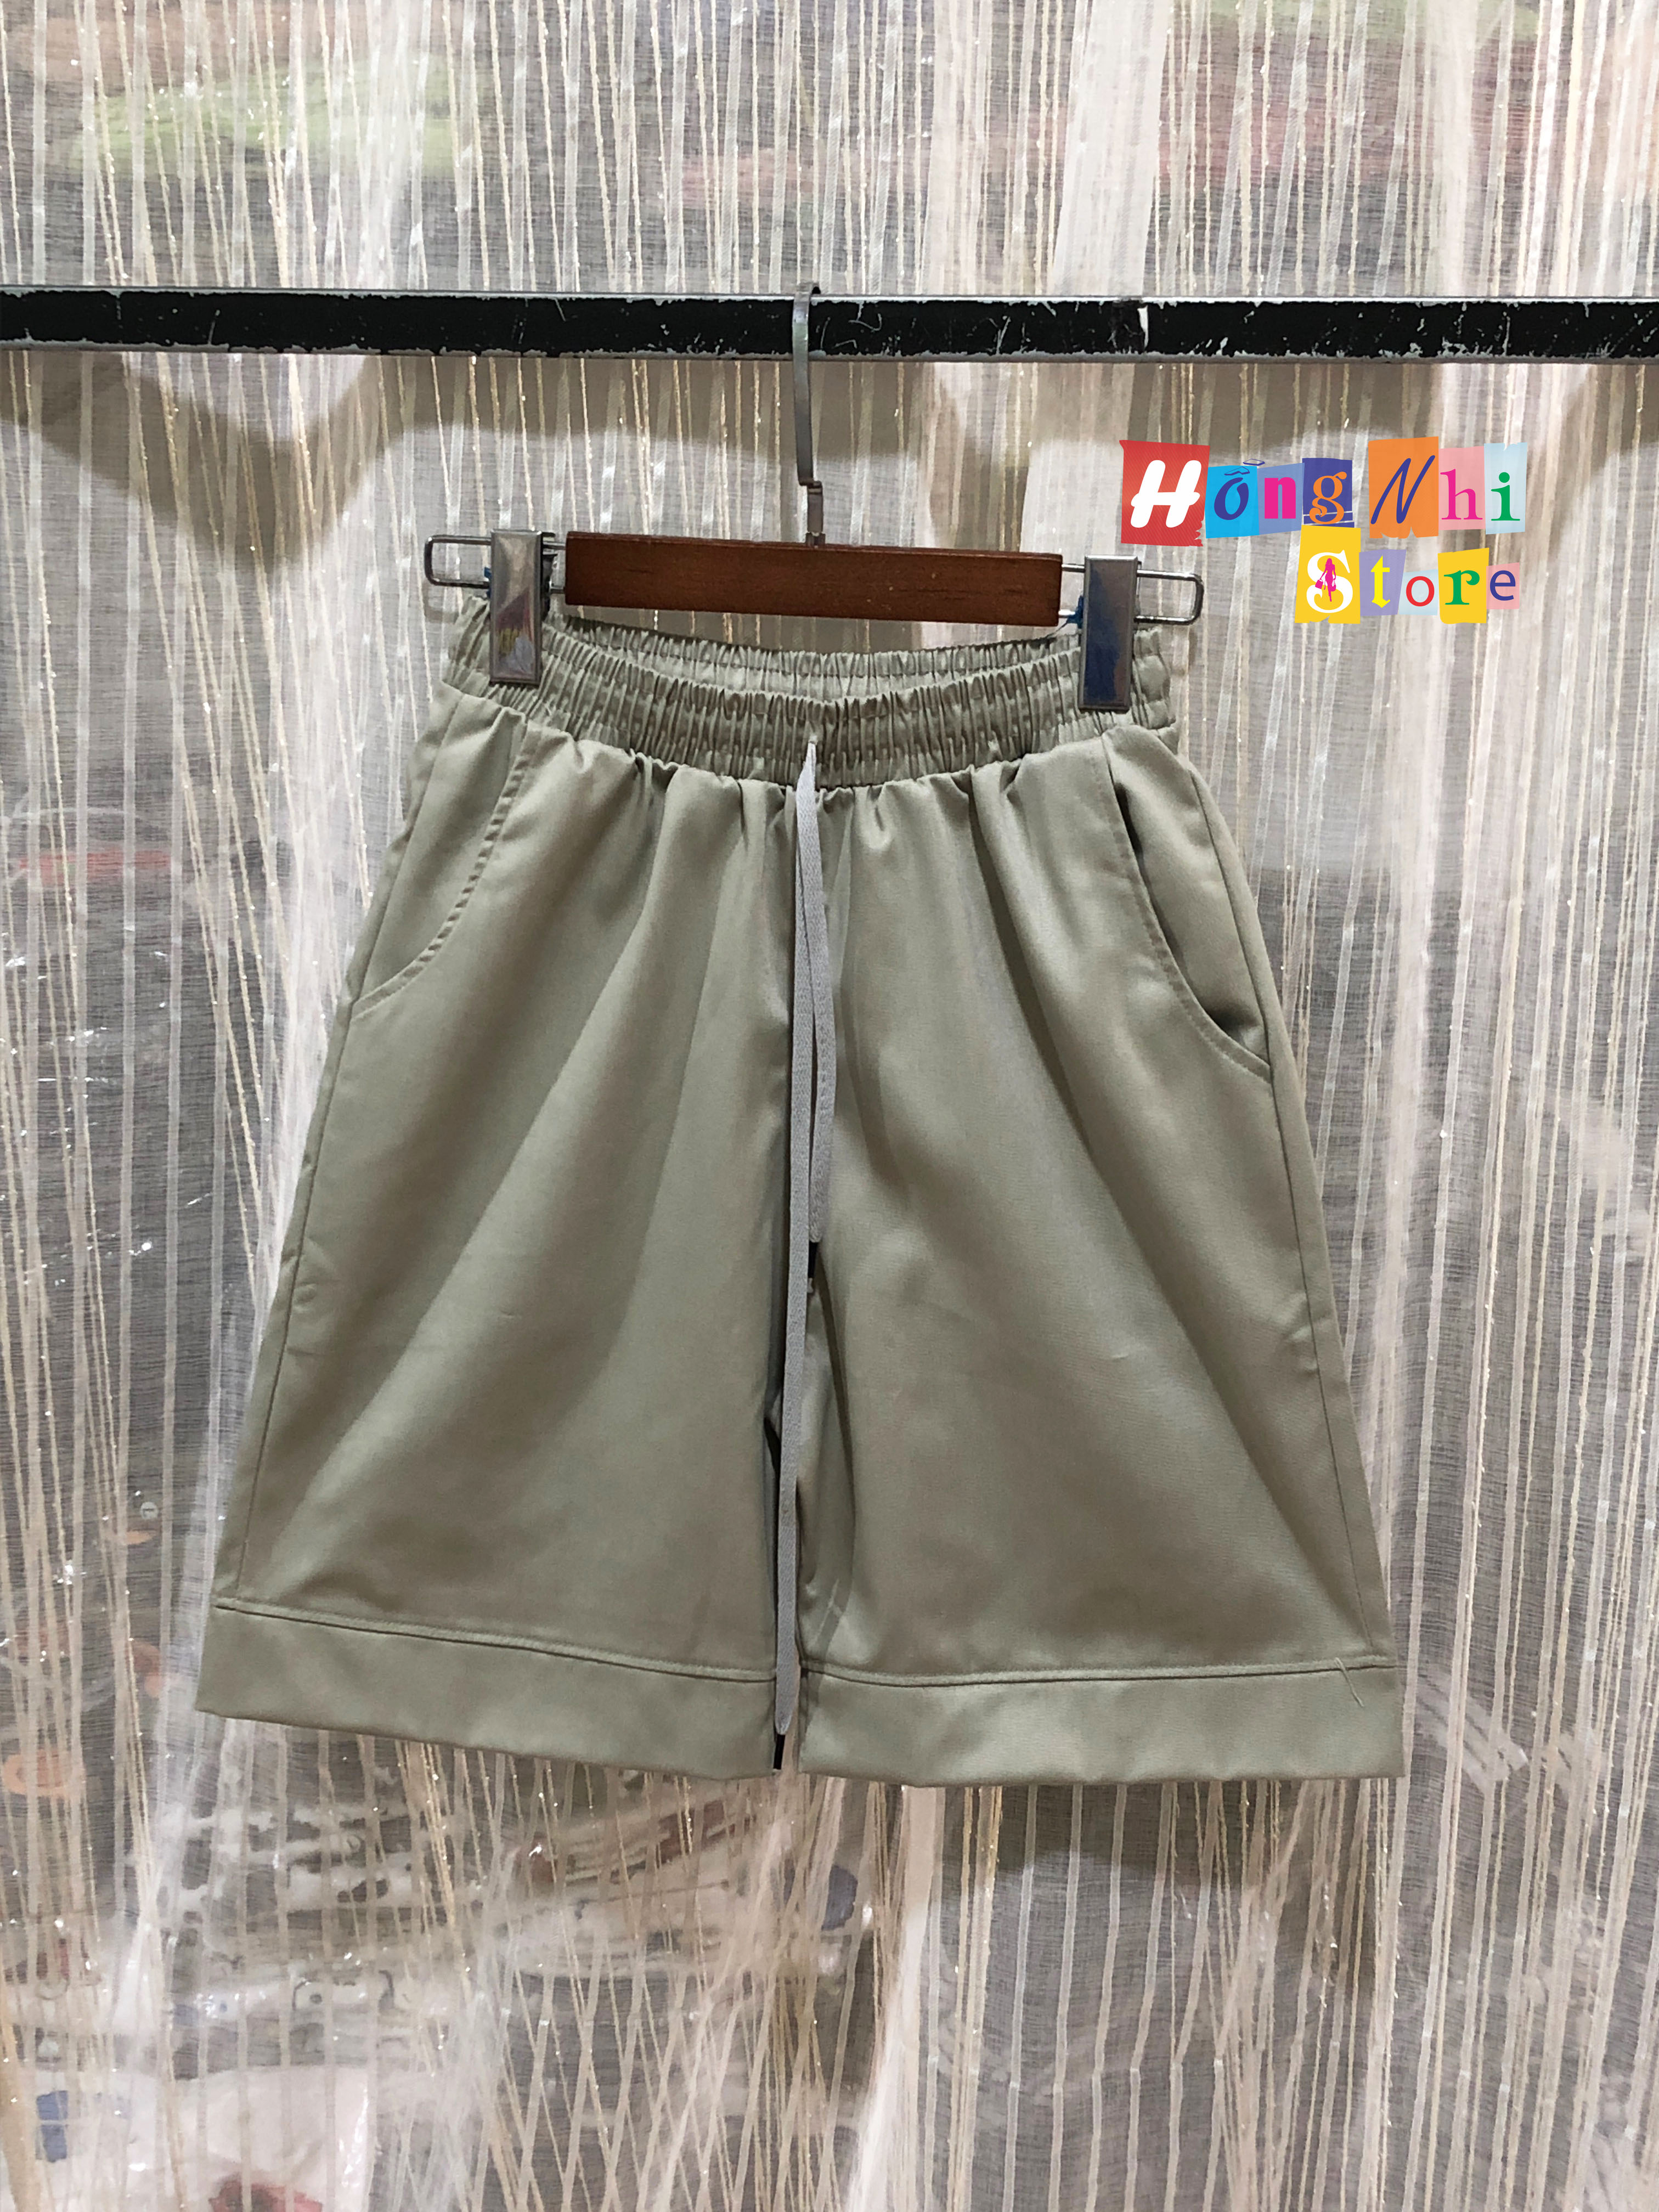 Quần Đùi Kaki Màu Xám - Short Kaki Plaid Pants Light Tan Unisex - MM